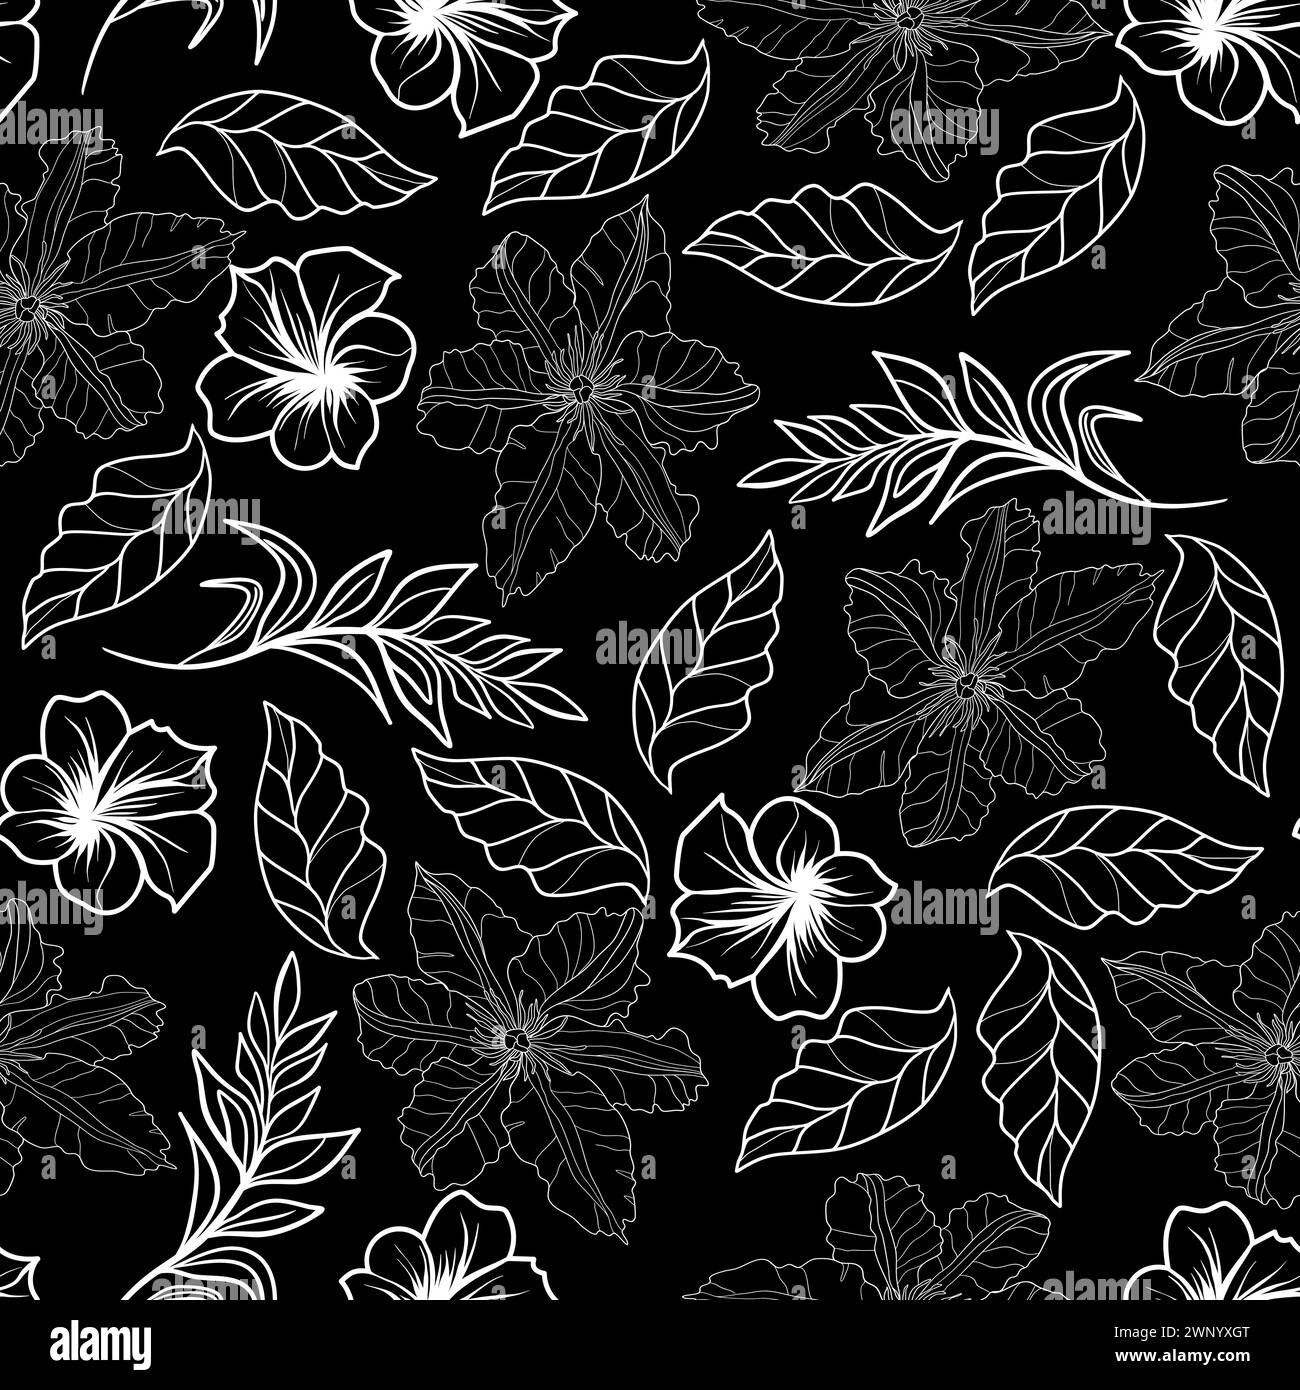 Nahtloses Blumenmuster mit Clematis Blumen, Plumeria und Blätter Vektor Illustration Stock Vektor